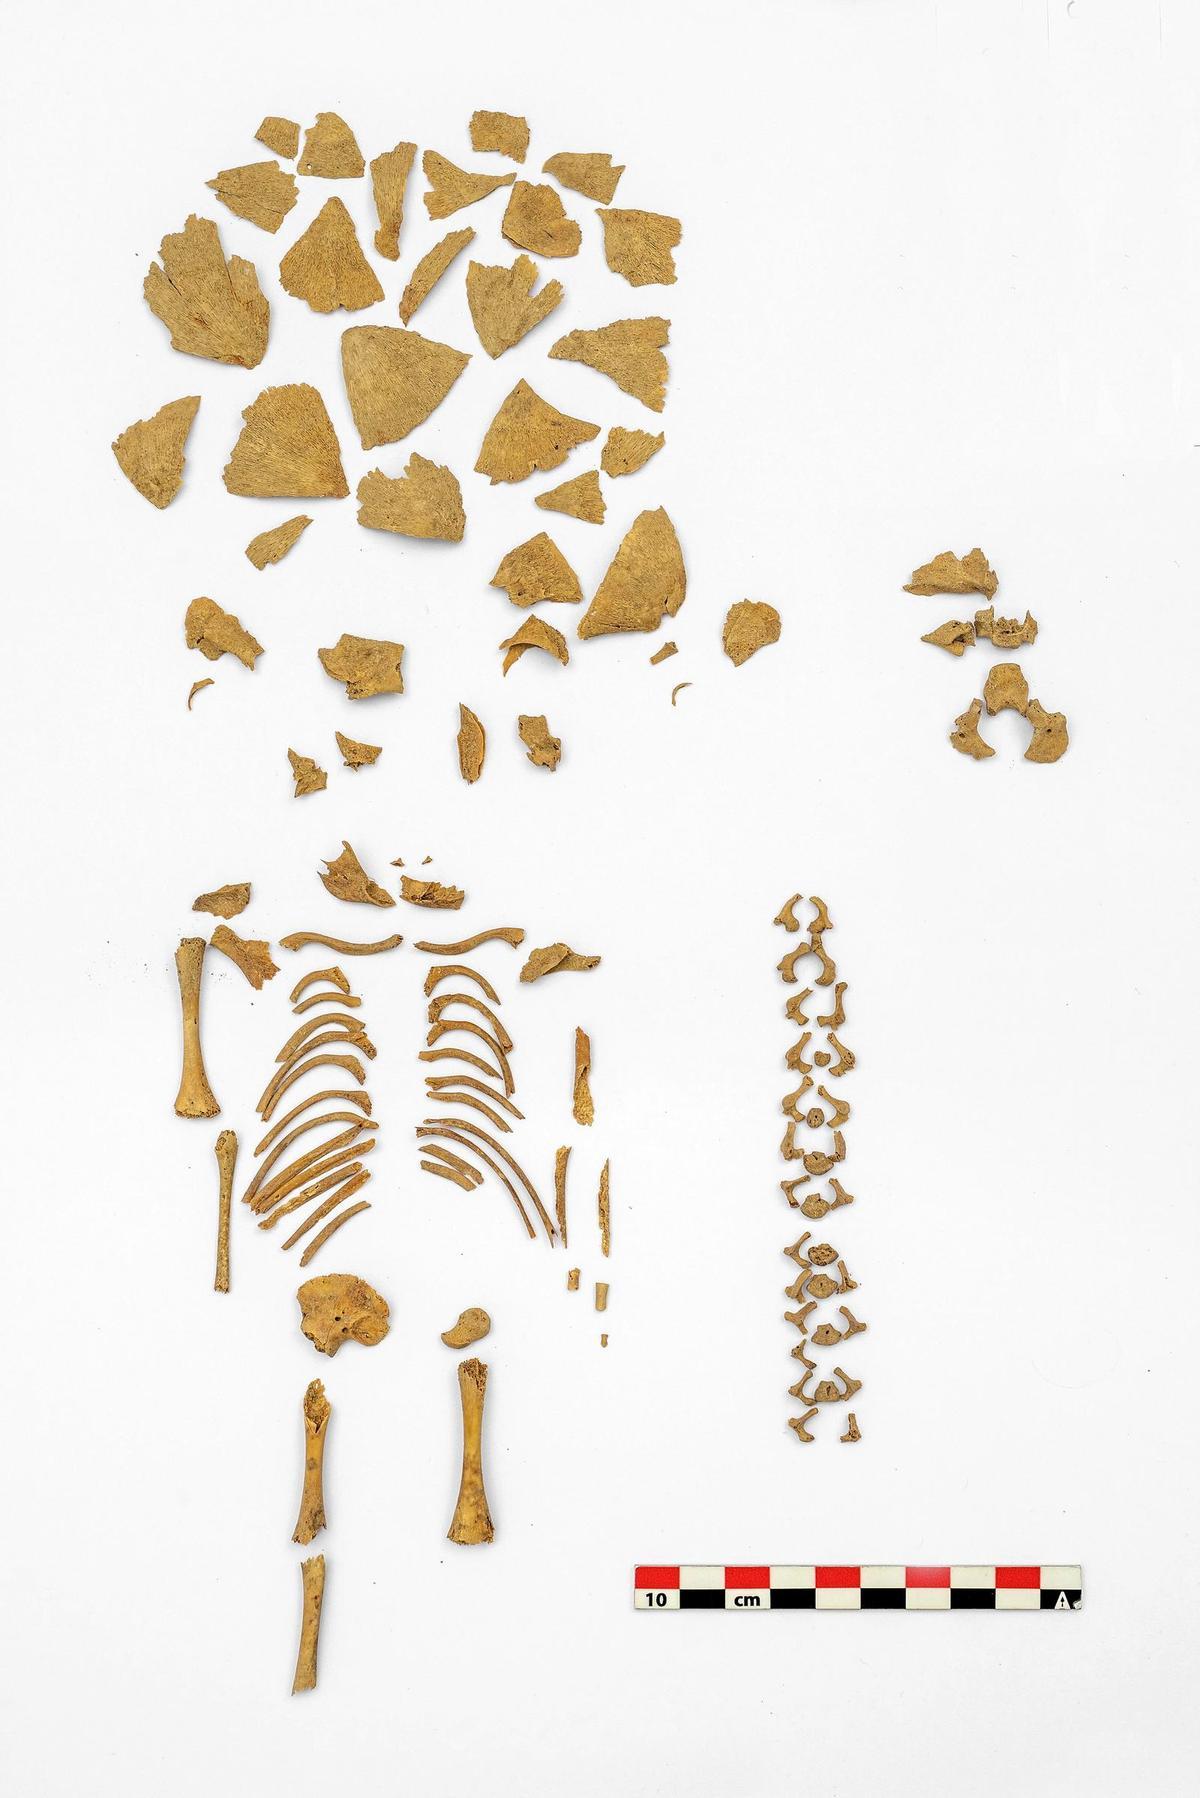 Uno de los esqueletos de un niño con síndrome de Down analizados por el equipo.